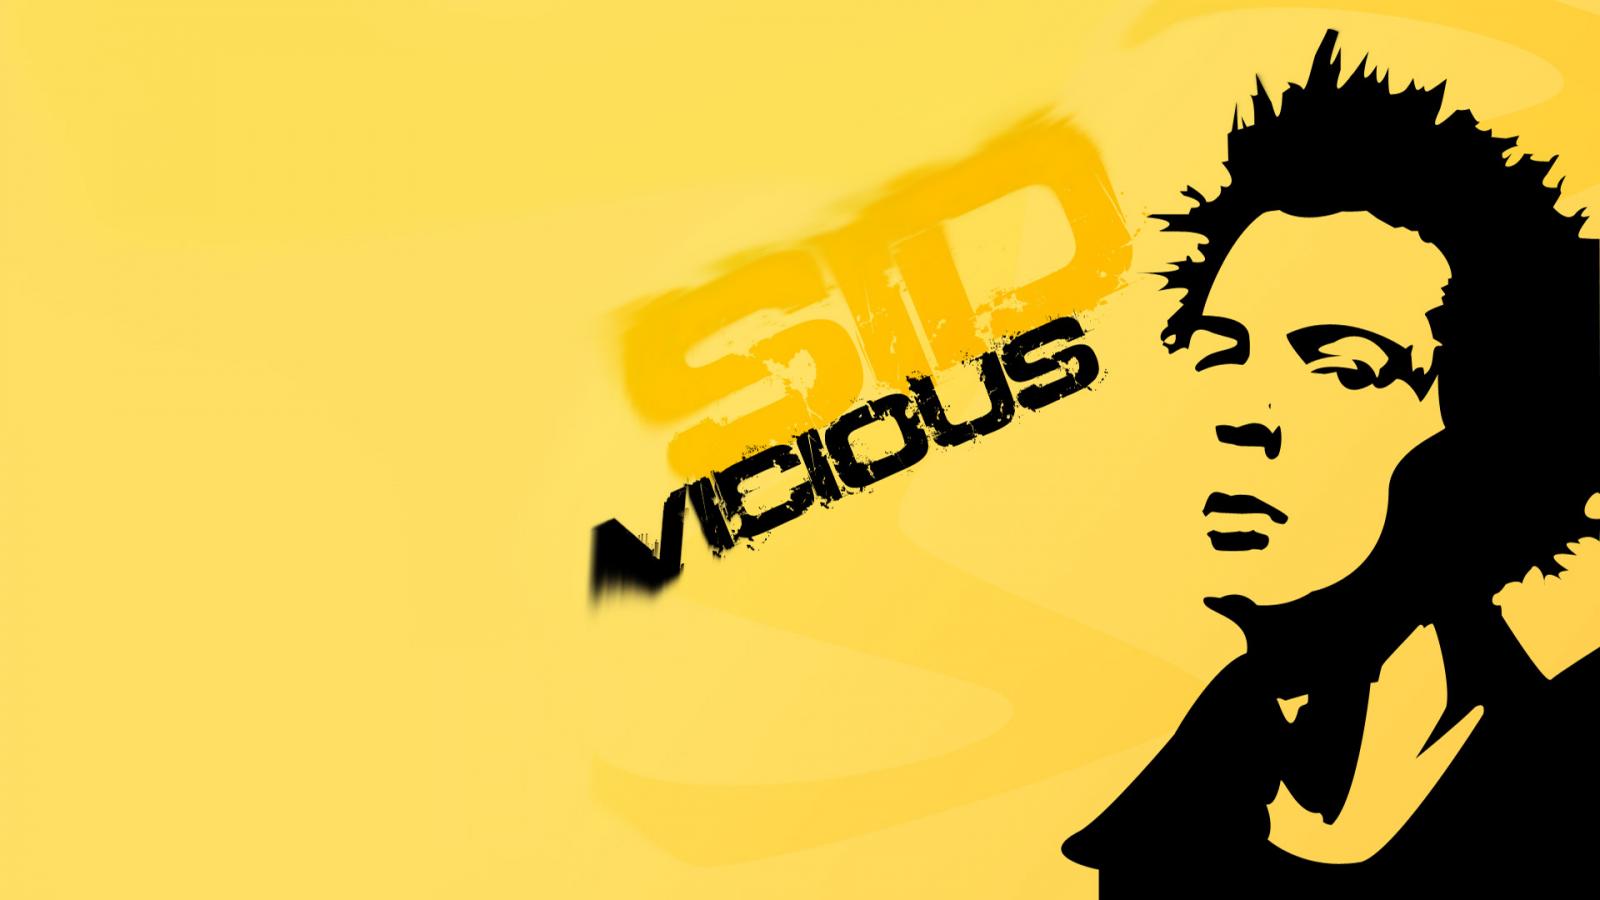 Sex Pistols Sid Vicious B4ny